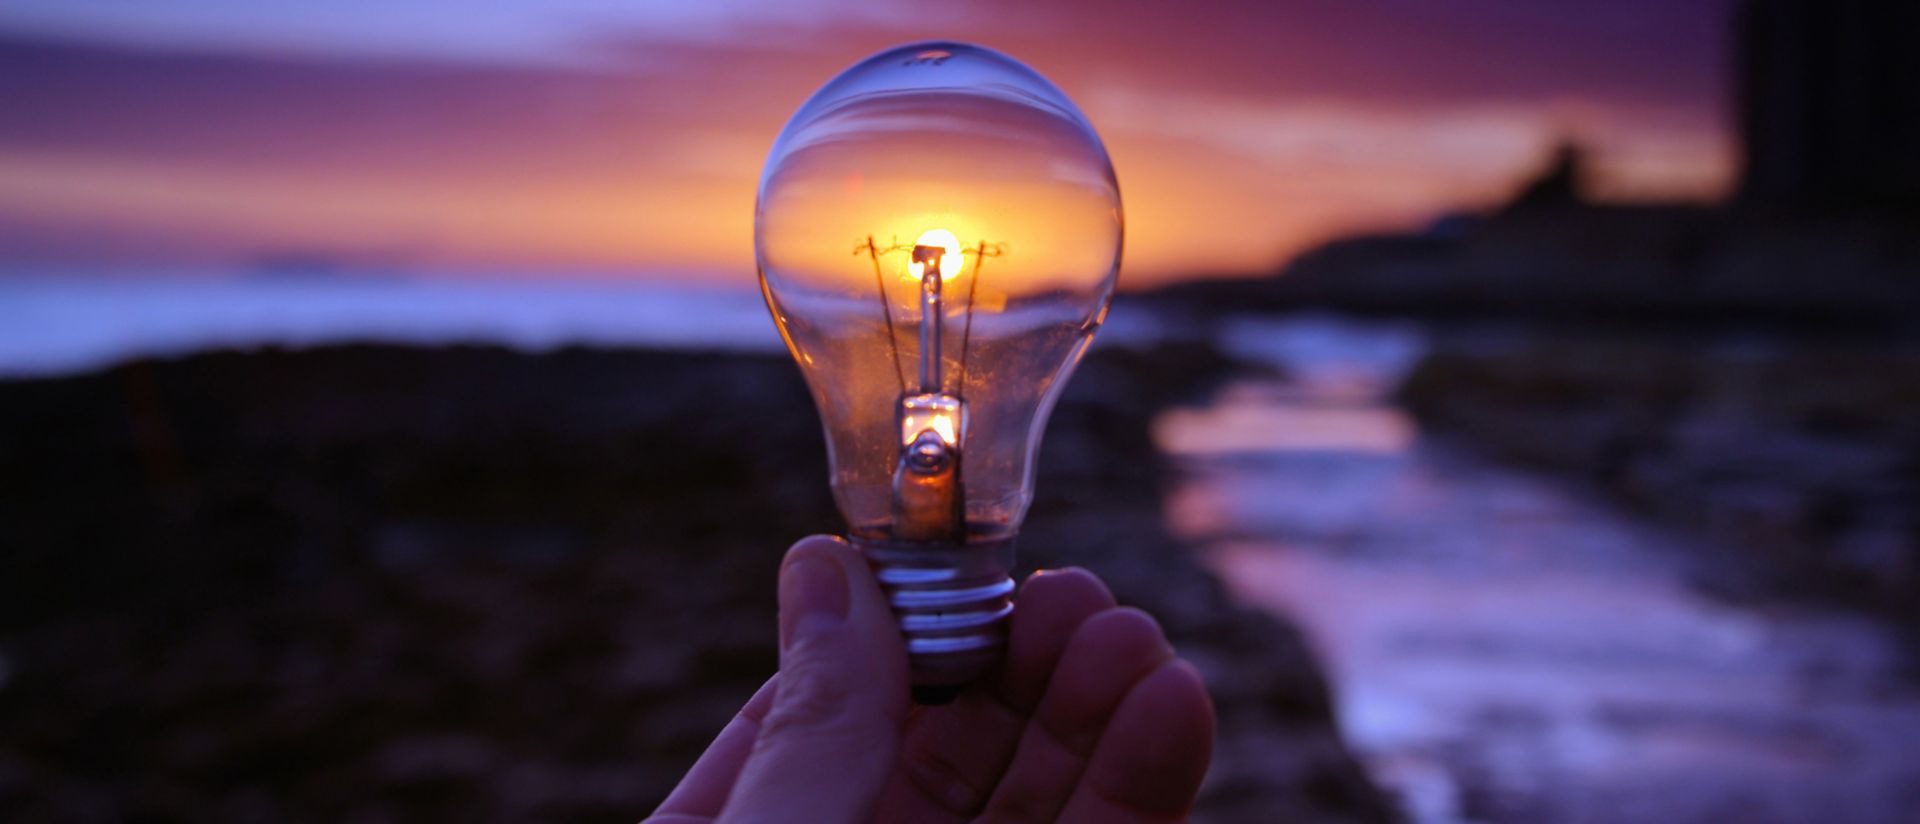 A lightbulb held during sunrise